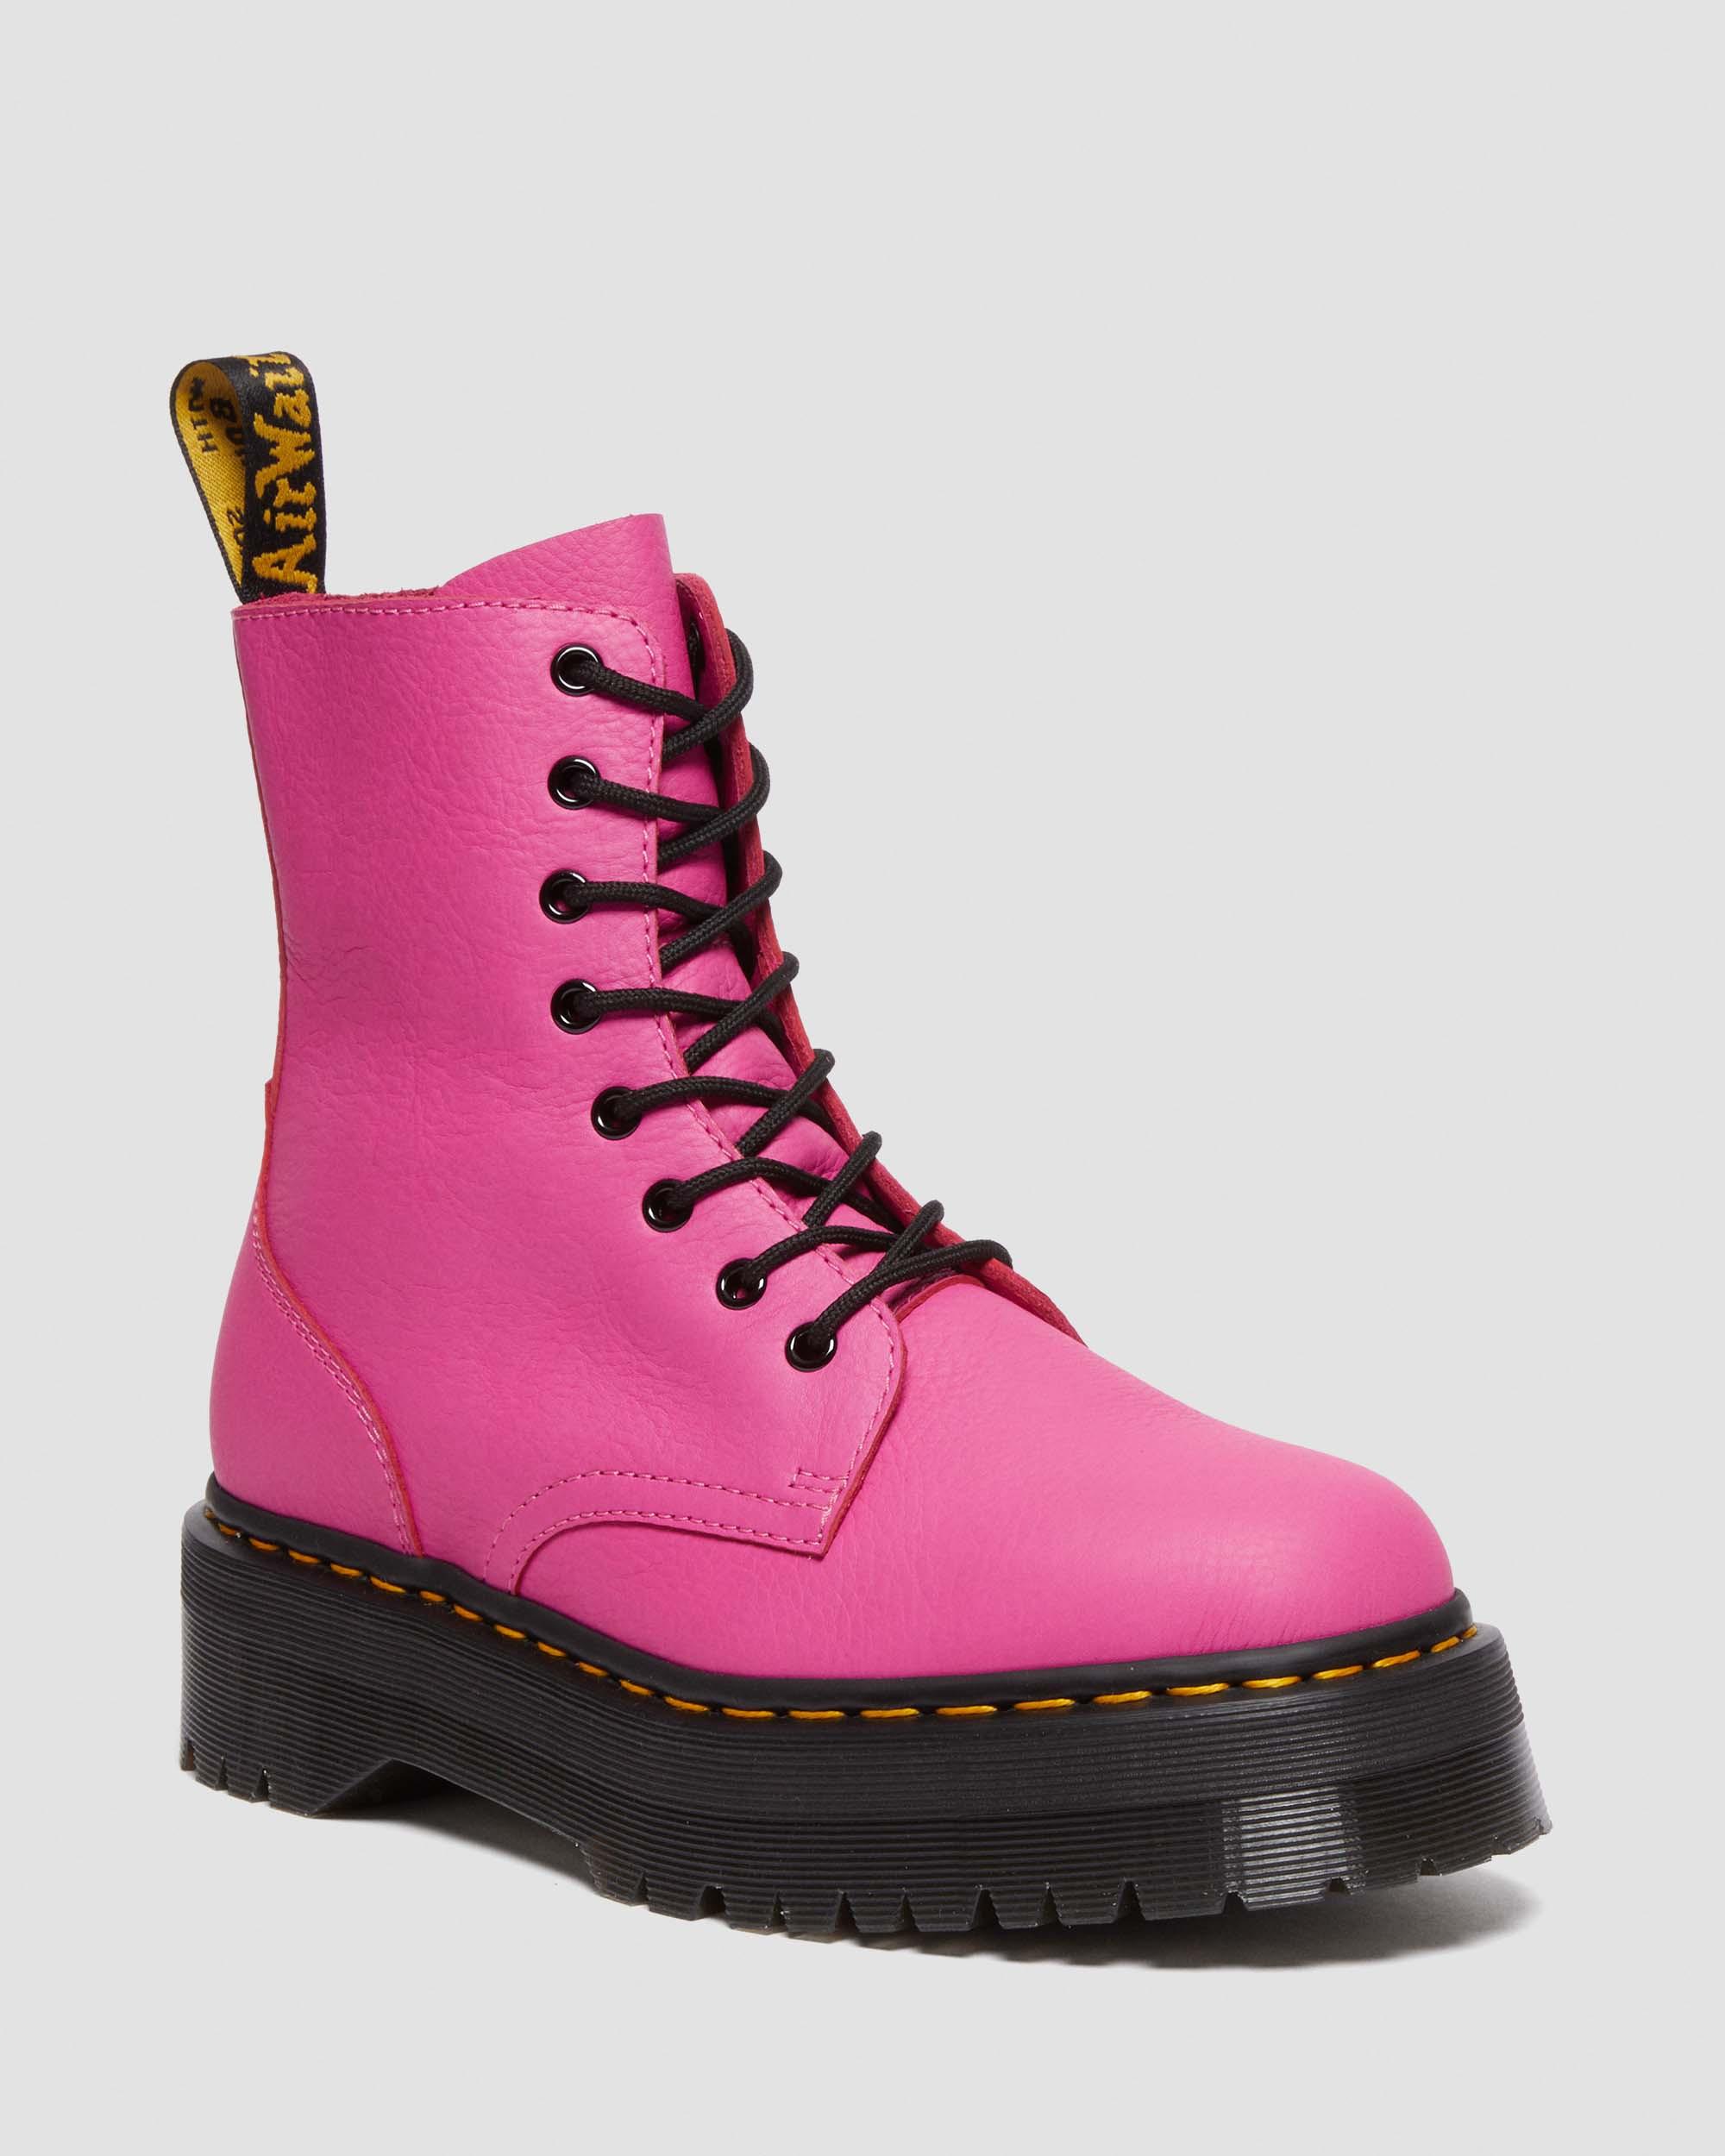 Jadon Boot Pisa Leather Platforms, Thrift Pink | Dr. Martens